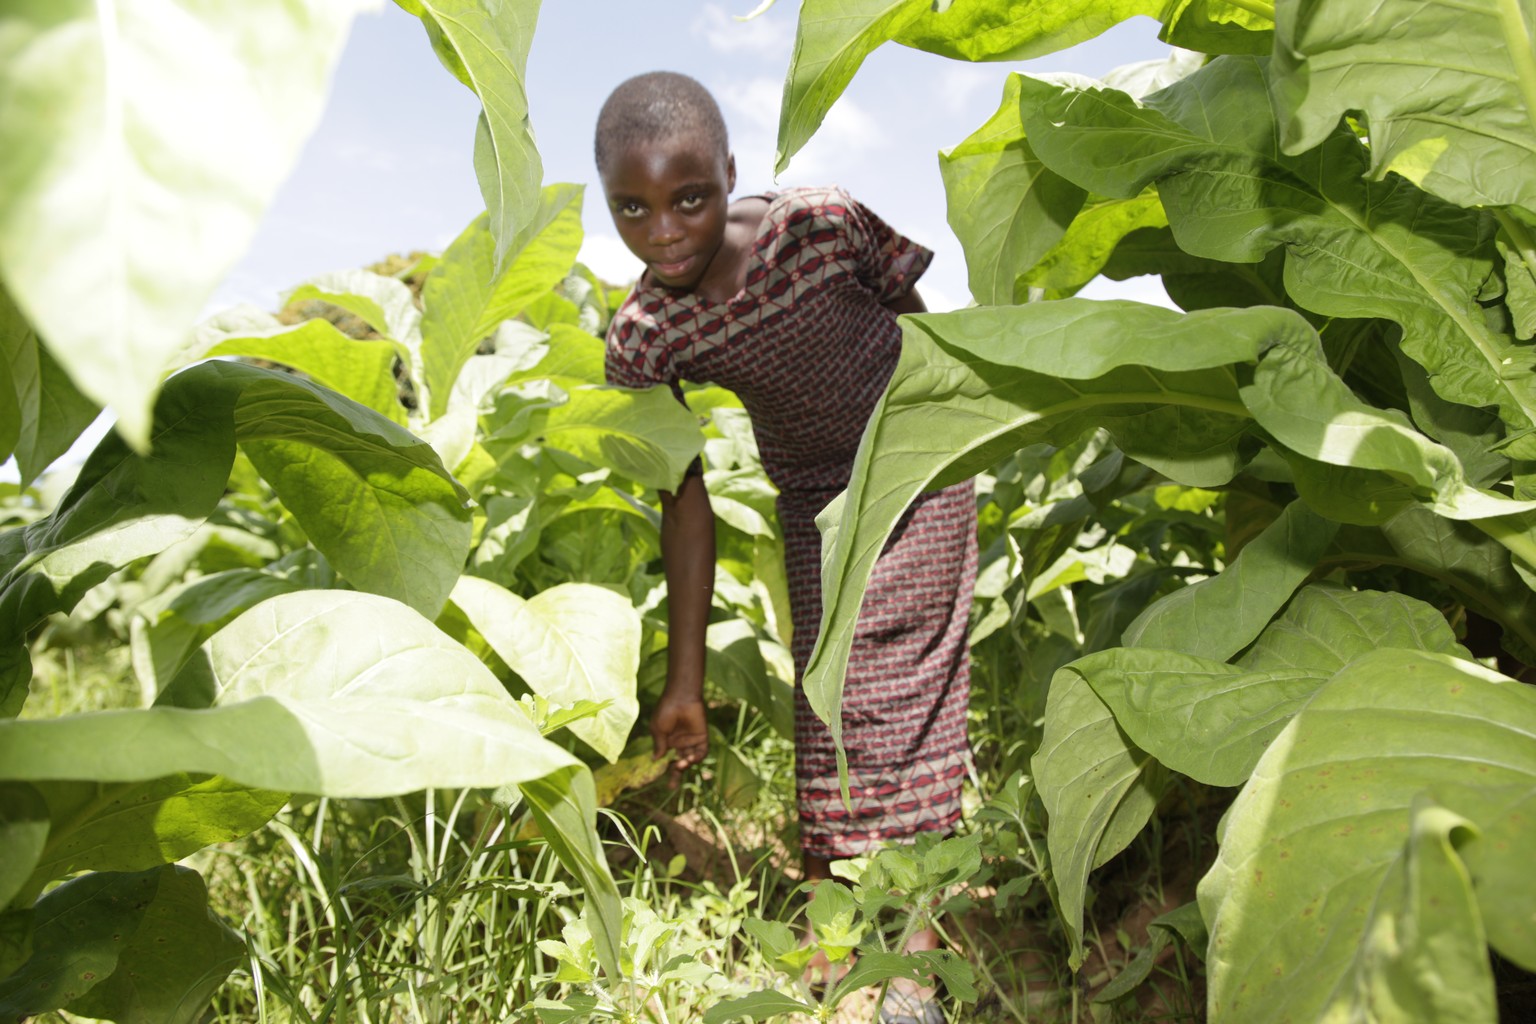 Archivbild von 2016: Ein Mädchen arbeitet auf einer Tabakplantage in Sambia.